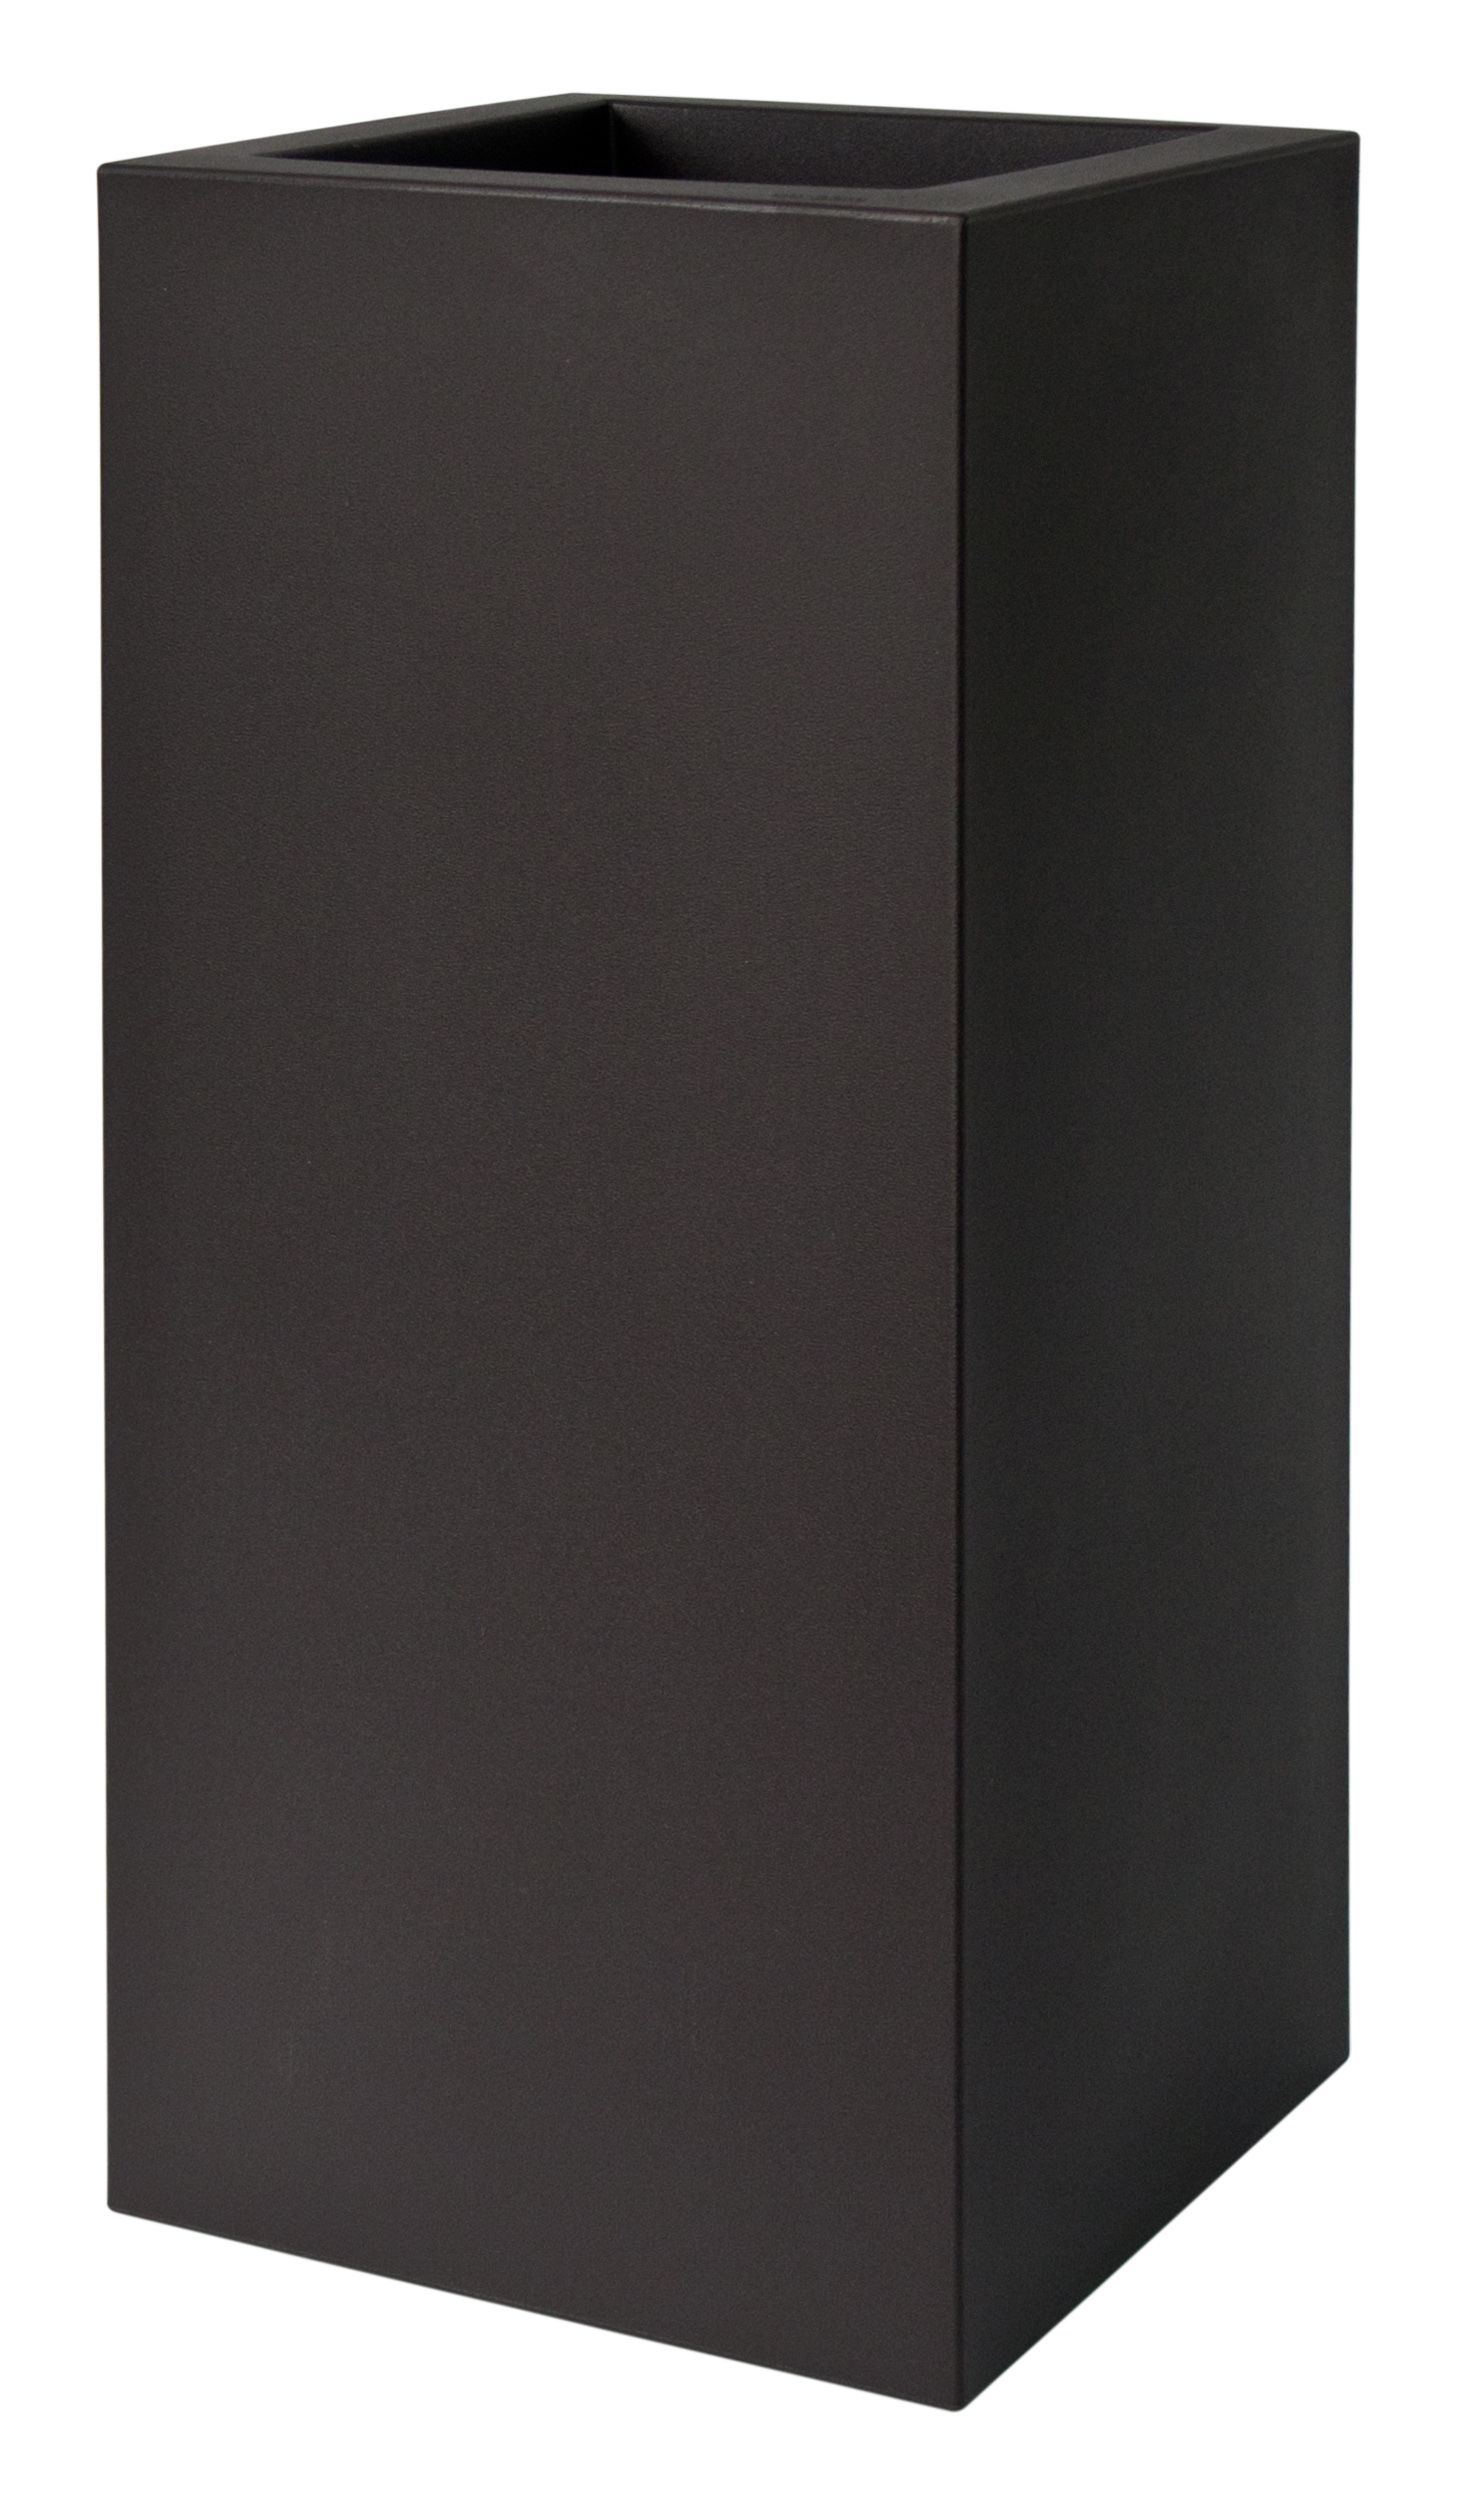 Plust - Dizajnový kvetináč KUBE HIGH, 30 x 30 x 70 cm - čierny